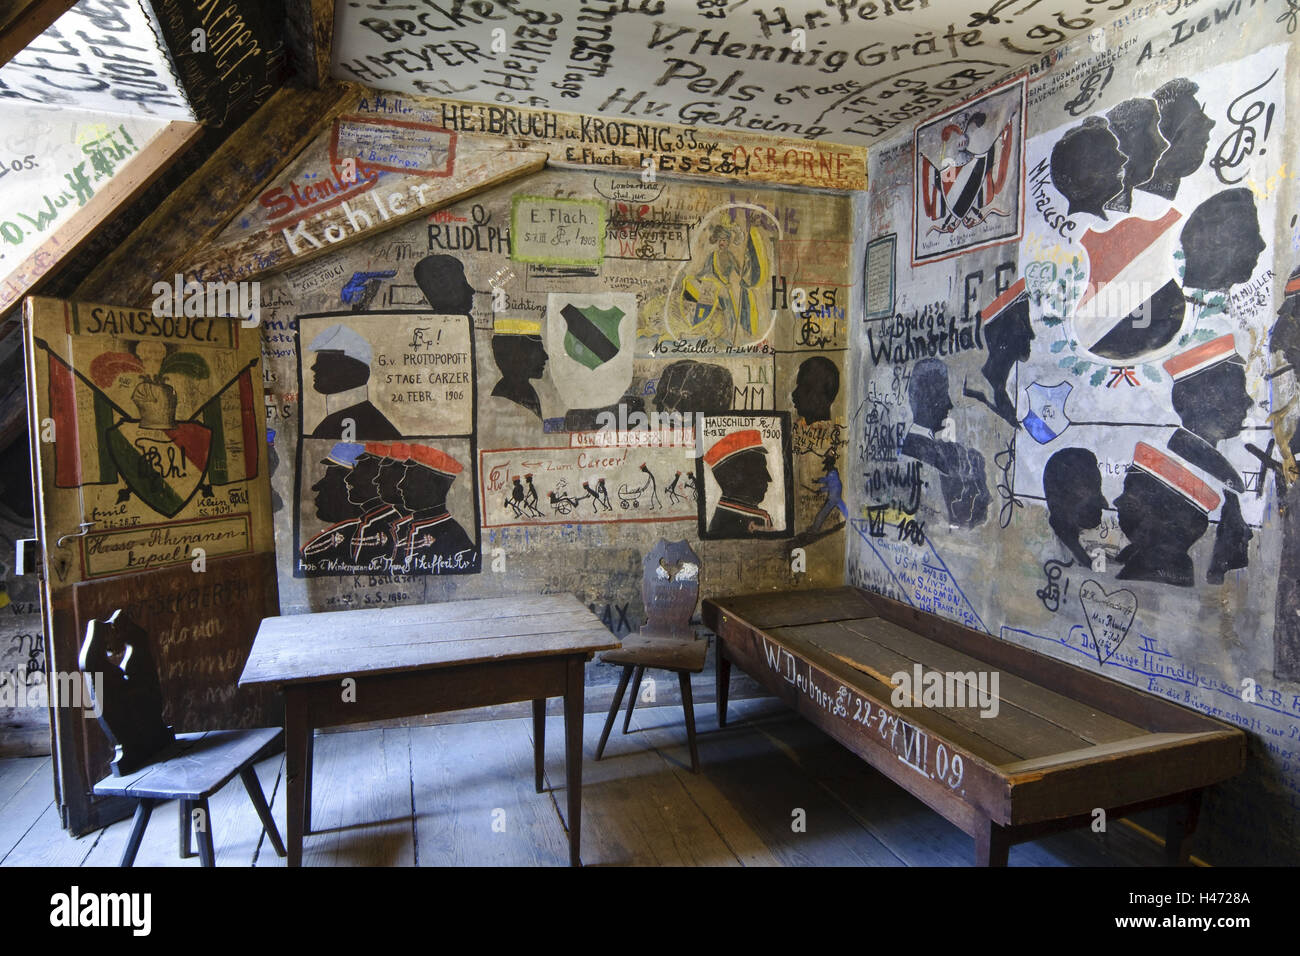 Heidelberg, studente cella di detenzione, pitture murali, graffiti, università, Baden-Württemberg, Germania, Foto Stock